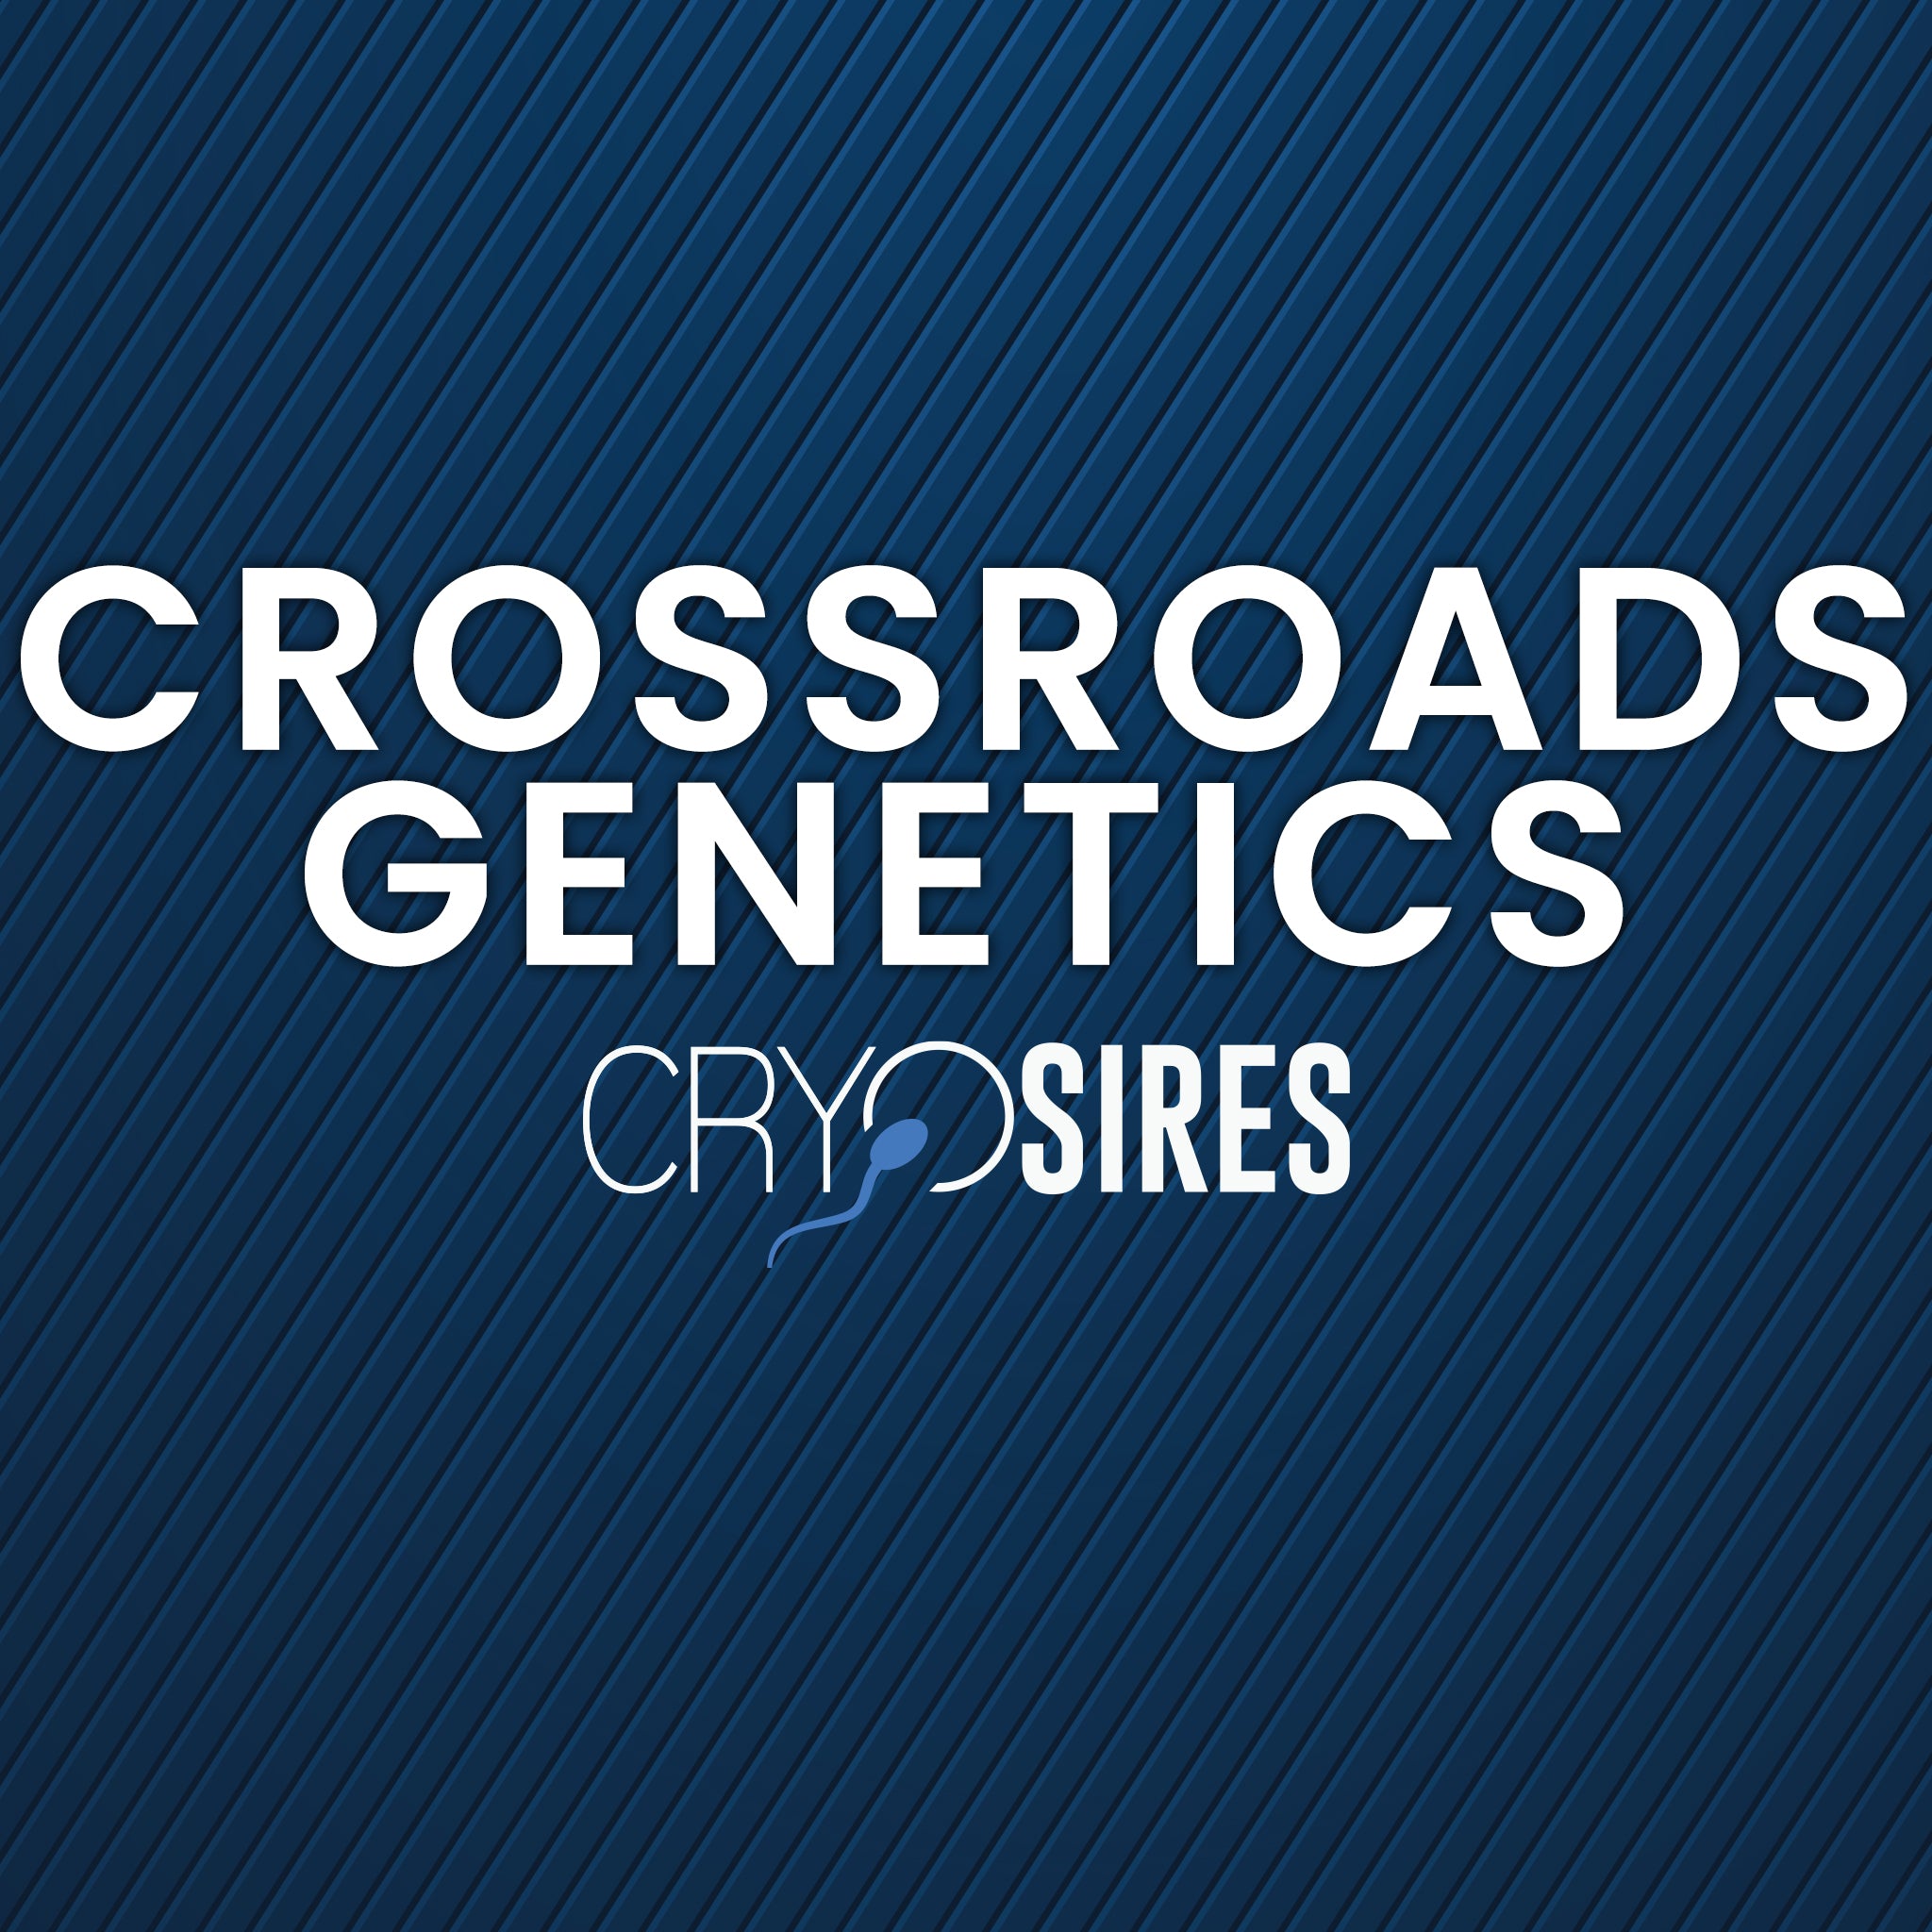 Crossroads Genetics